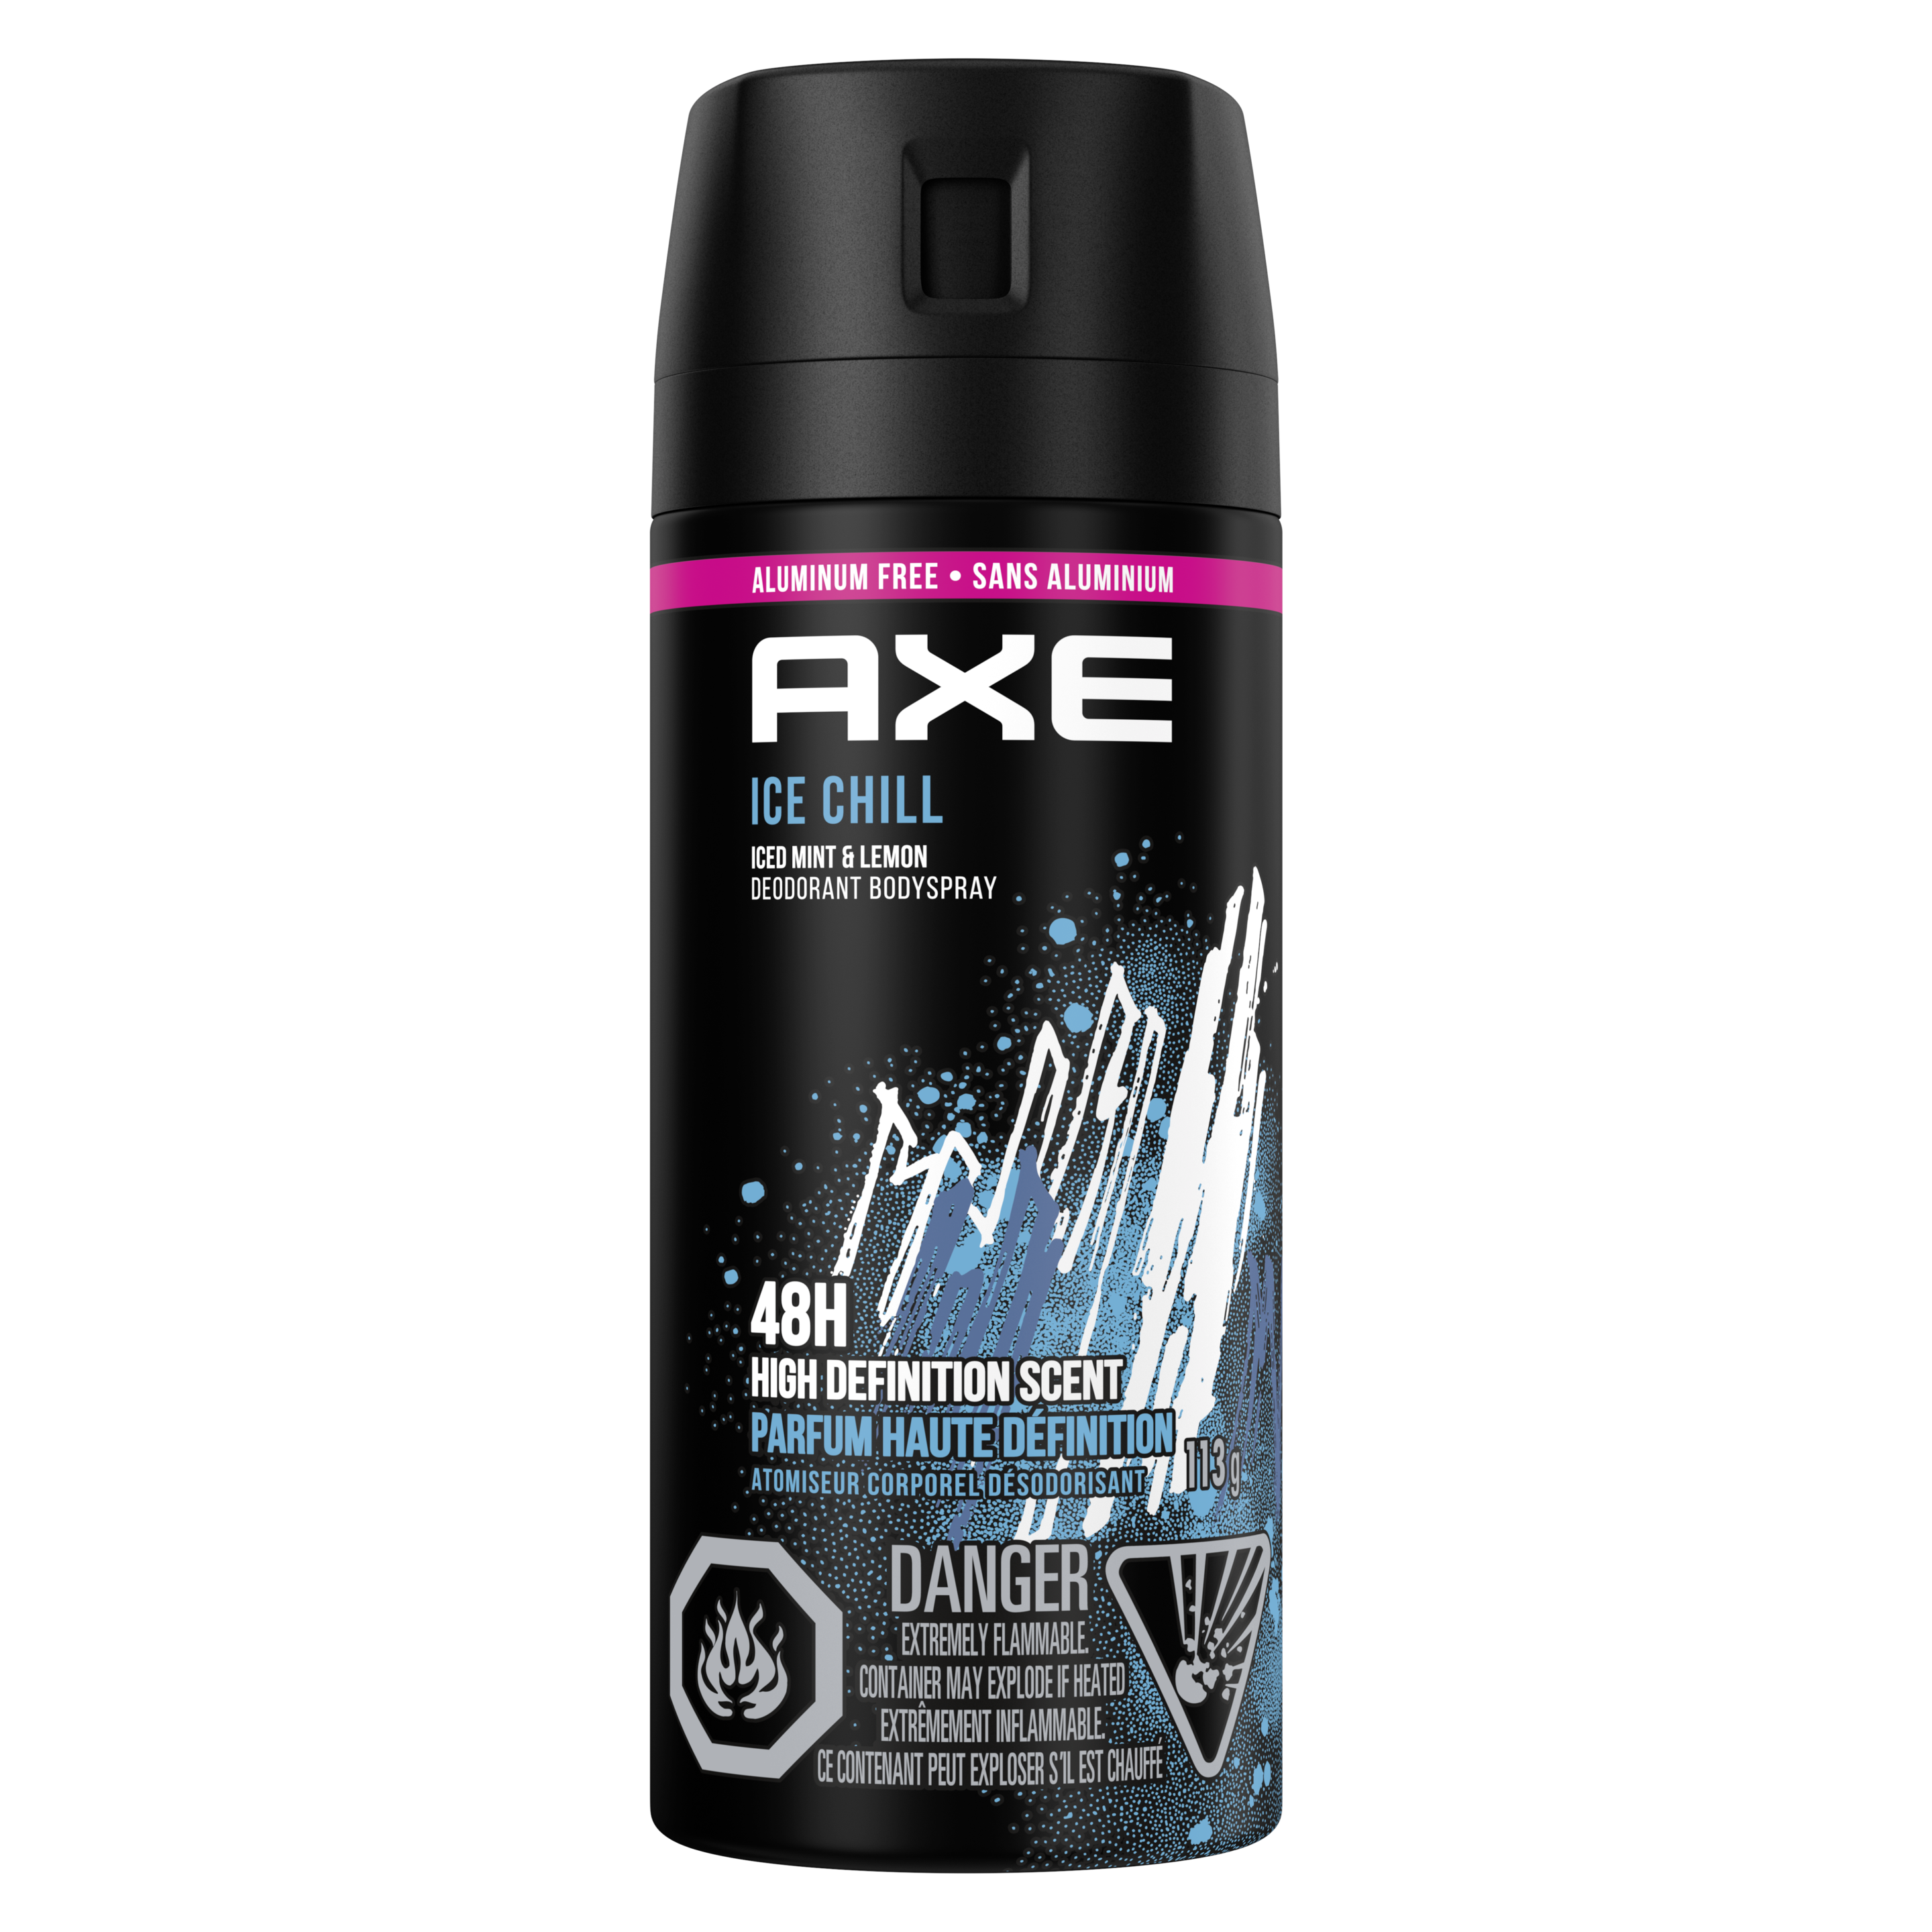 AXE Ice Chill Deodorant Body Spray